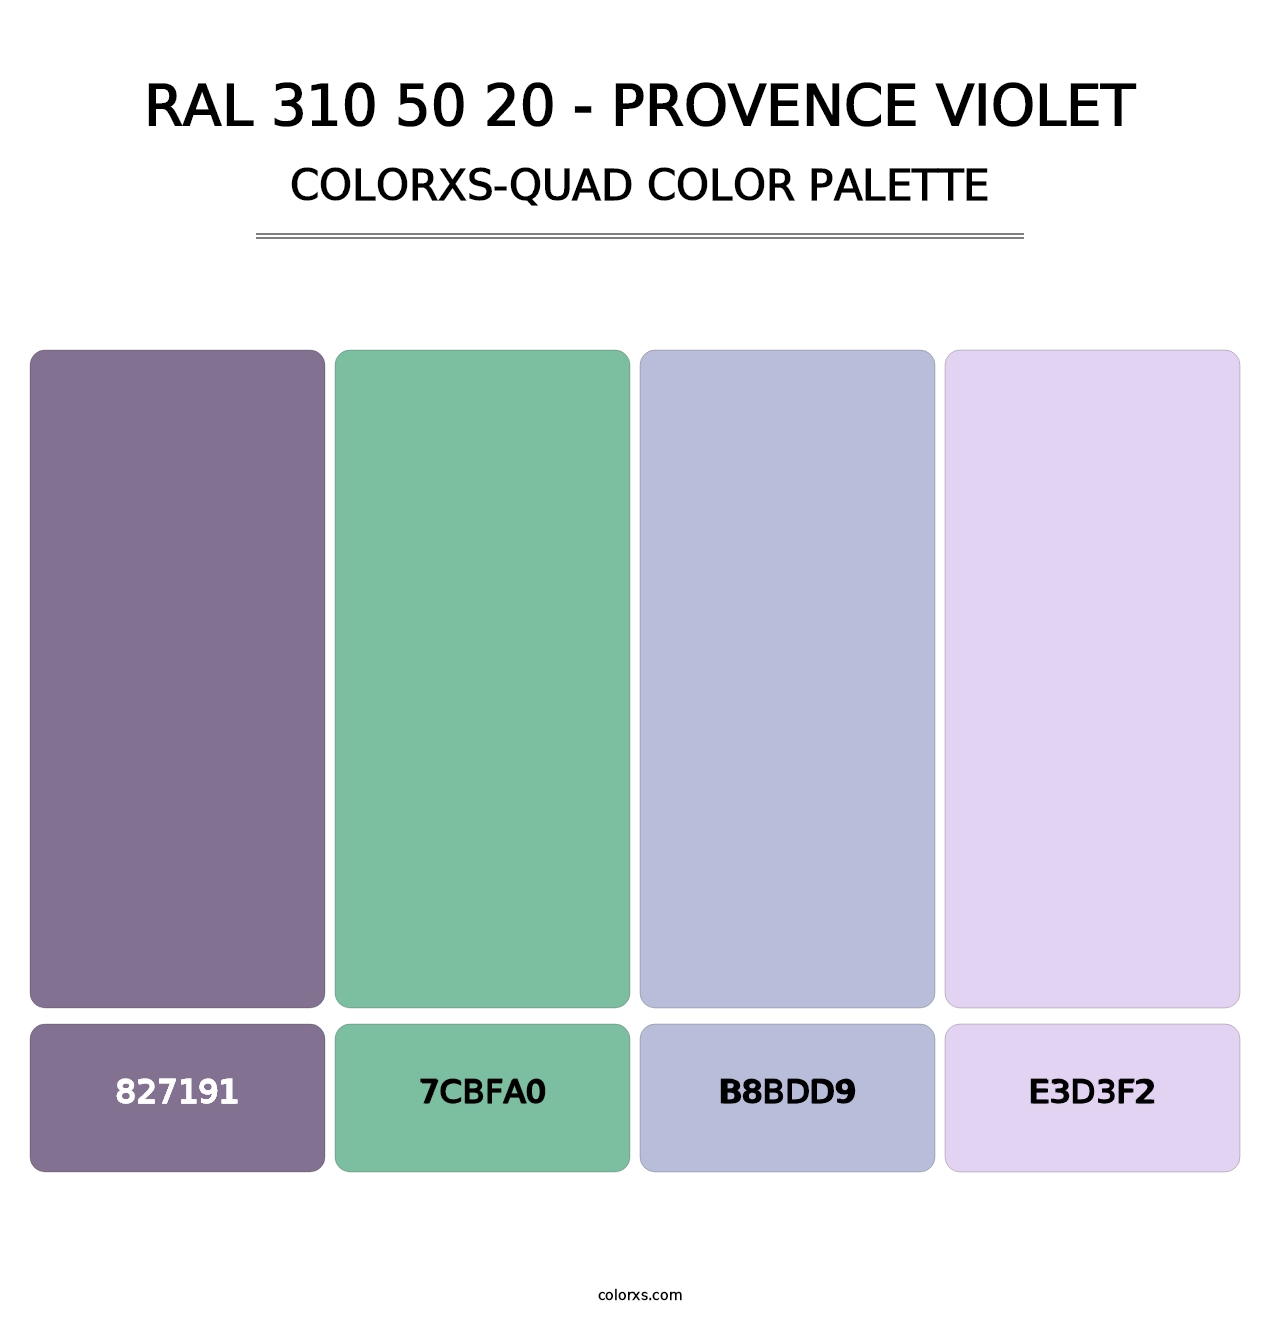 RAL 310 50 20 - Provence Violet - Colorxs Quad Palette